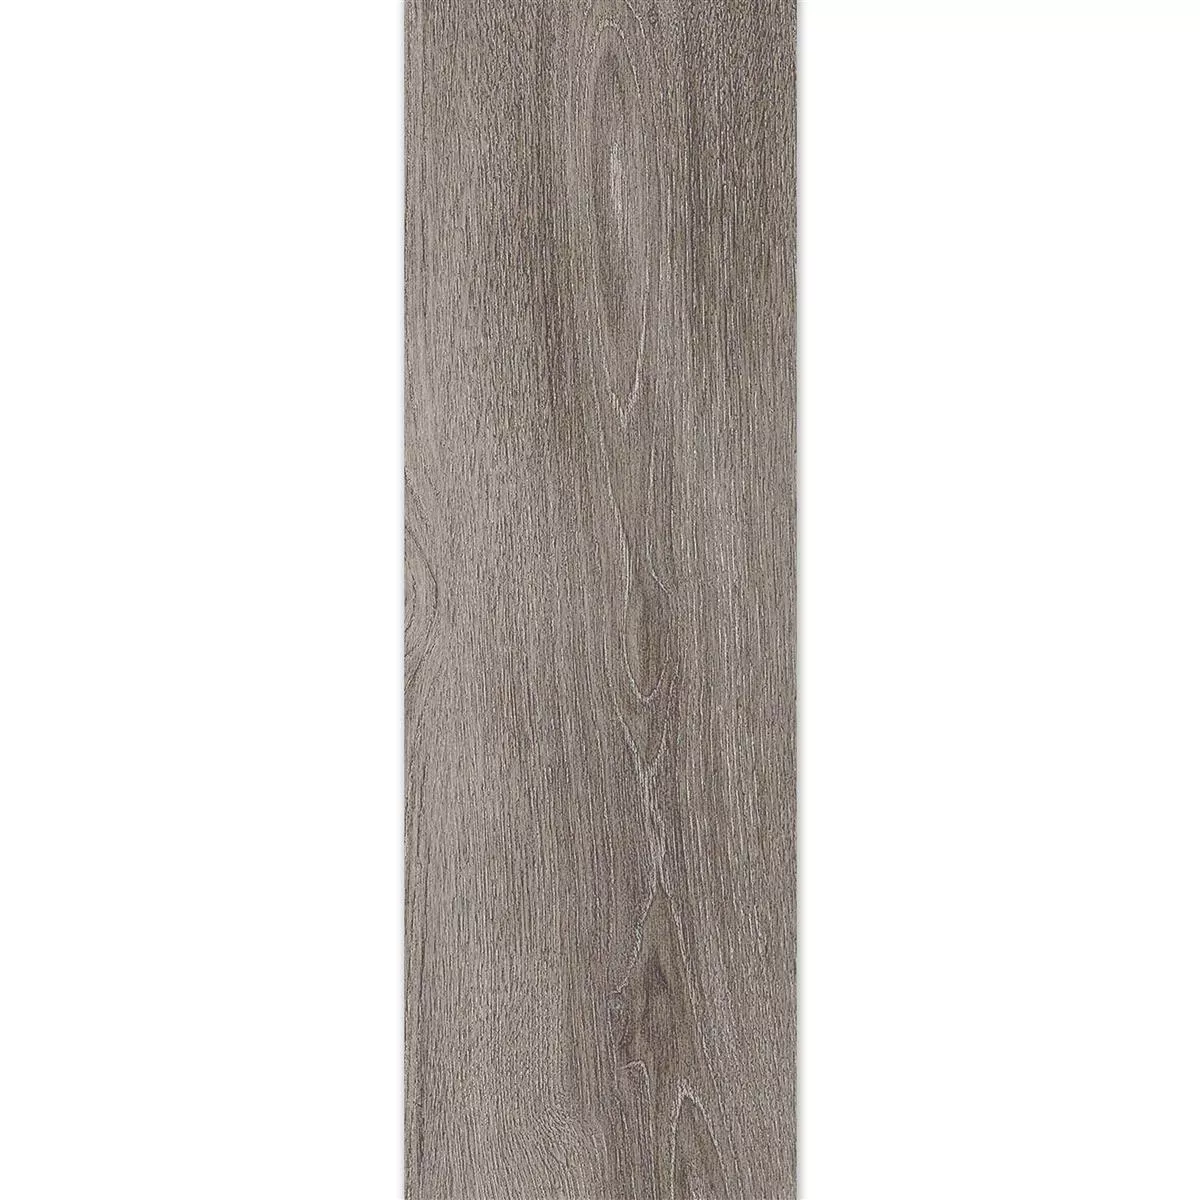 Próbka Płytki Podłogowe Regina Wygląd Drewna 20x120cm Srebrny